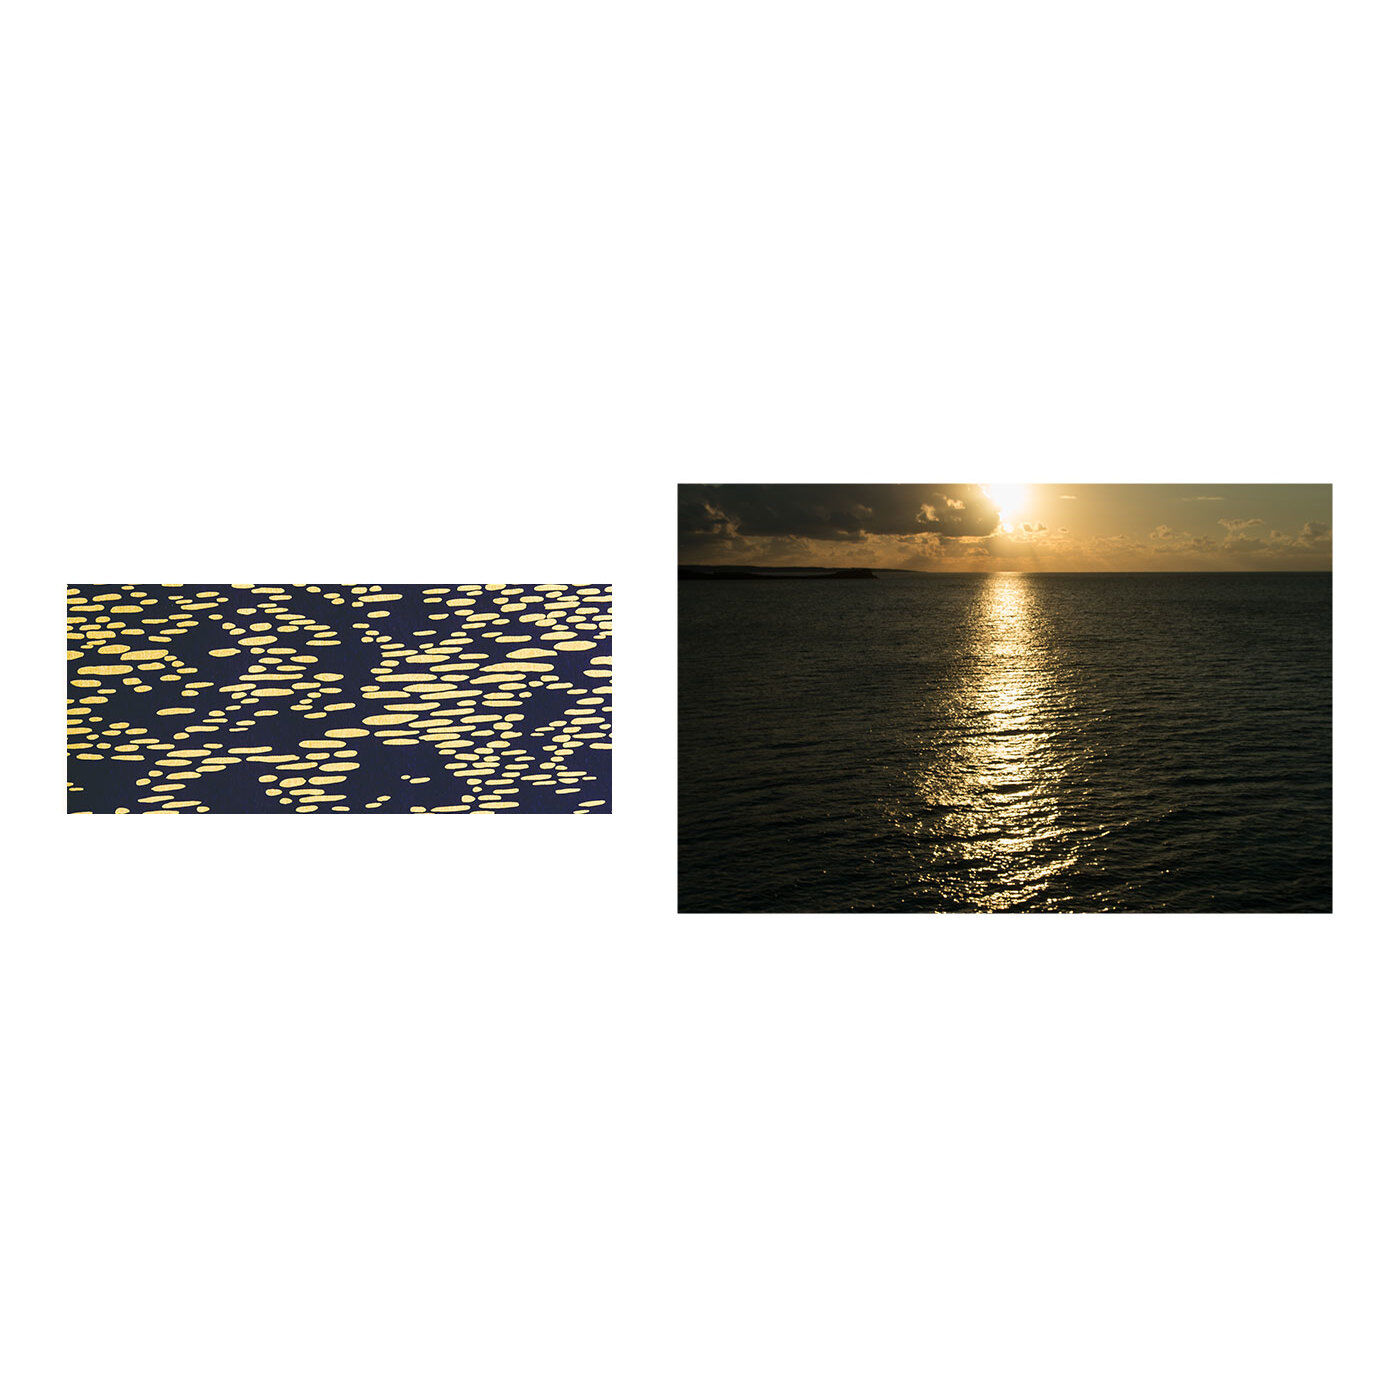 フェリシモの雑貨 Kraso|沖縄から愛をこめて。「シマノネ」紙ものセットの会|【島の夕暮れ】朝、昼、晩、さまざまに色や表情を変える海。この柄は夕日にきらめく海の水面をイメージ。自然と寄りそって暮らしてきた島の人々の、穏やかで柔らかな視点を象徴するようなデザインです。自然と人間のやさしい関係が、これからも続いてほしいという願いが込められています。